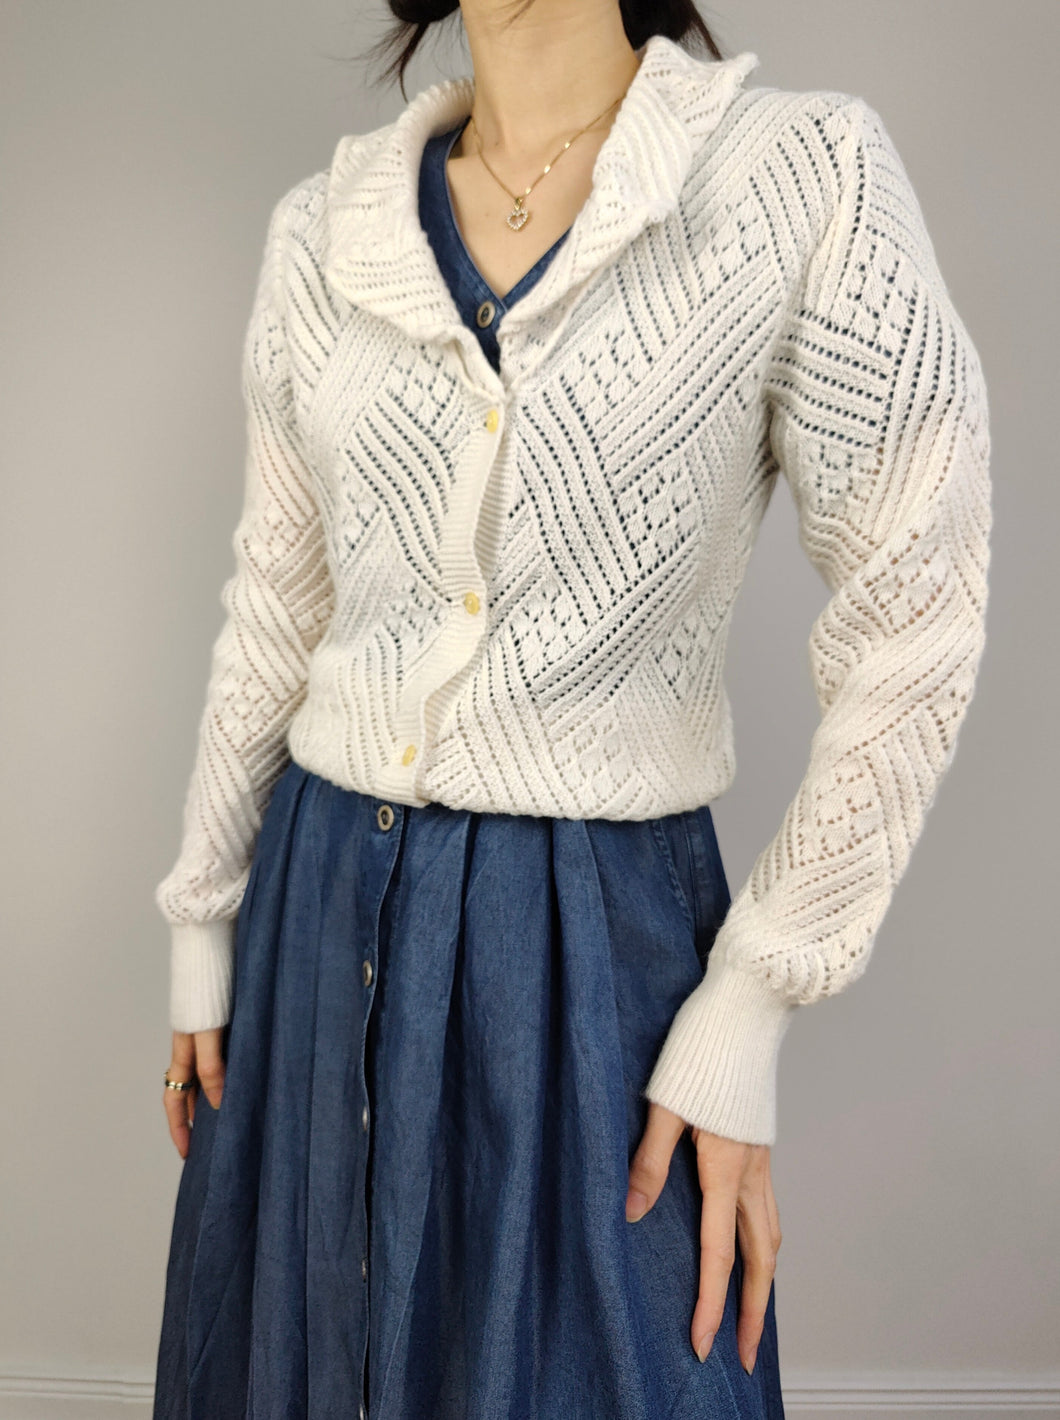 Der weiße süße offene Strick-Cardigan | Vintage Rüschenkragen schlicht gehäkelt Strukturmuster gestrickt Damen Prärie feminin Cottage Core XS